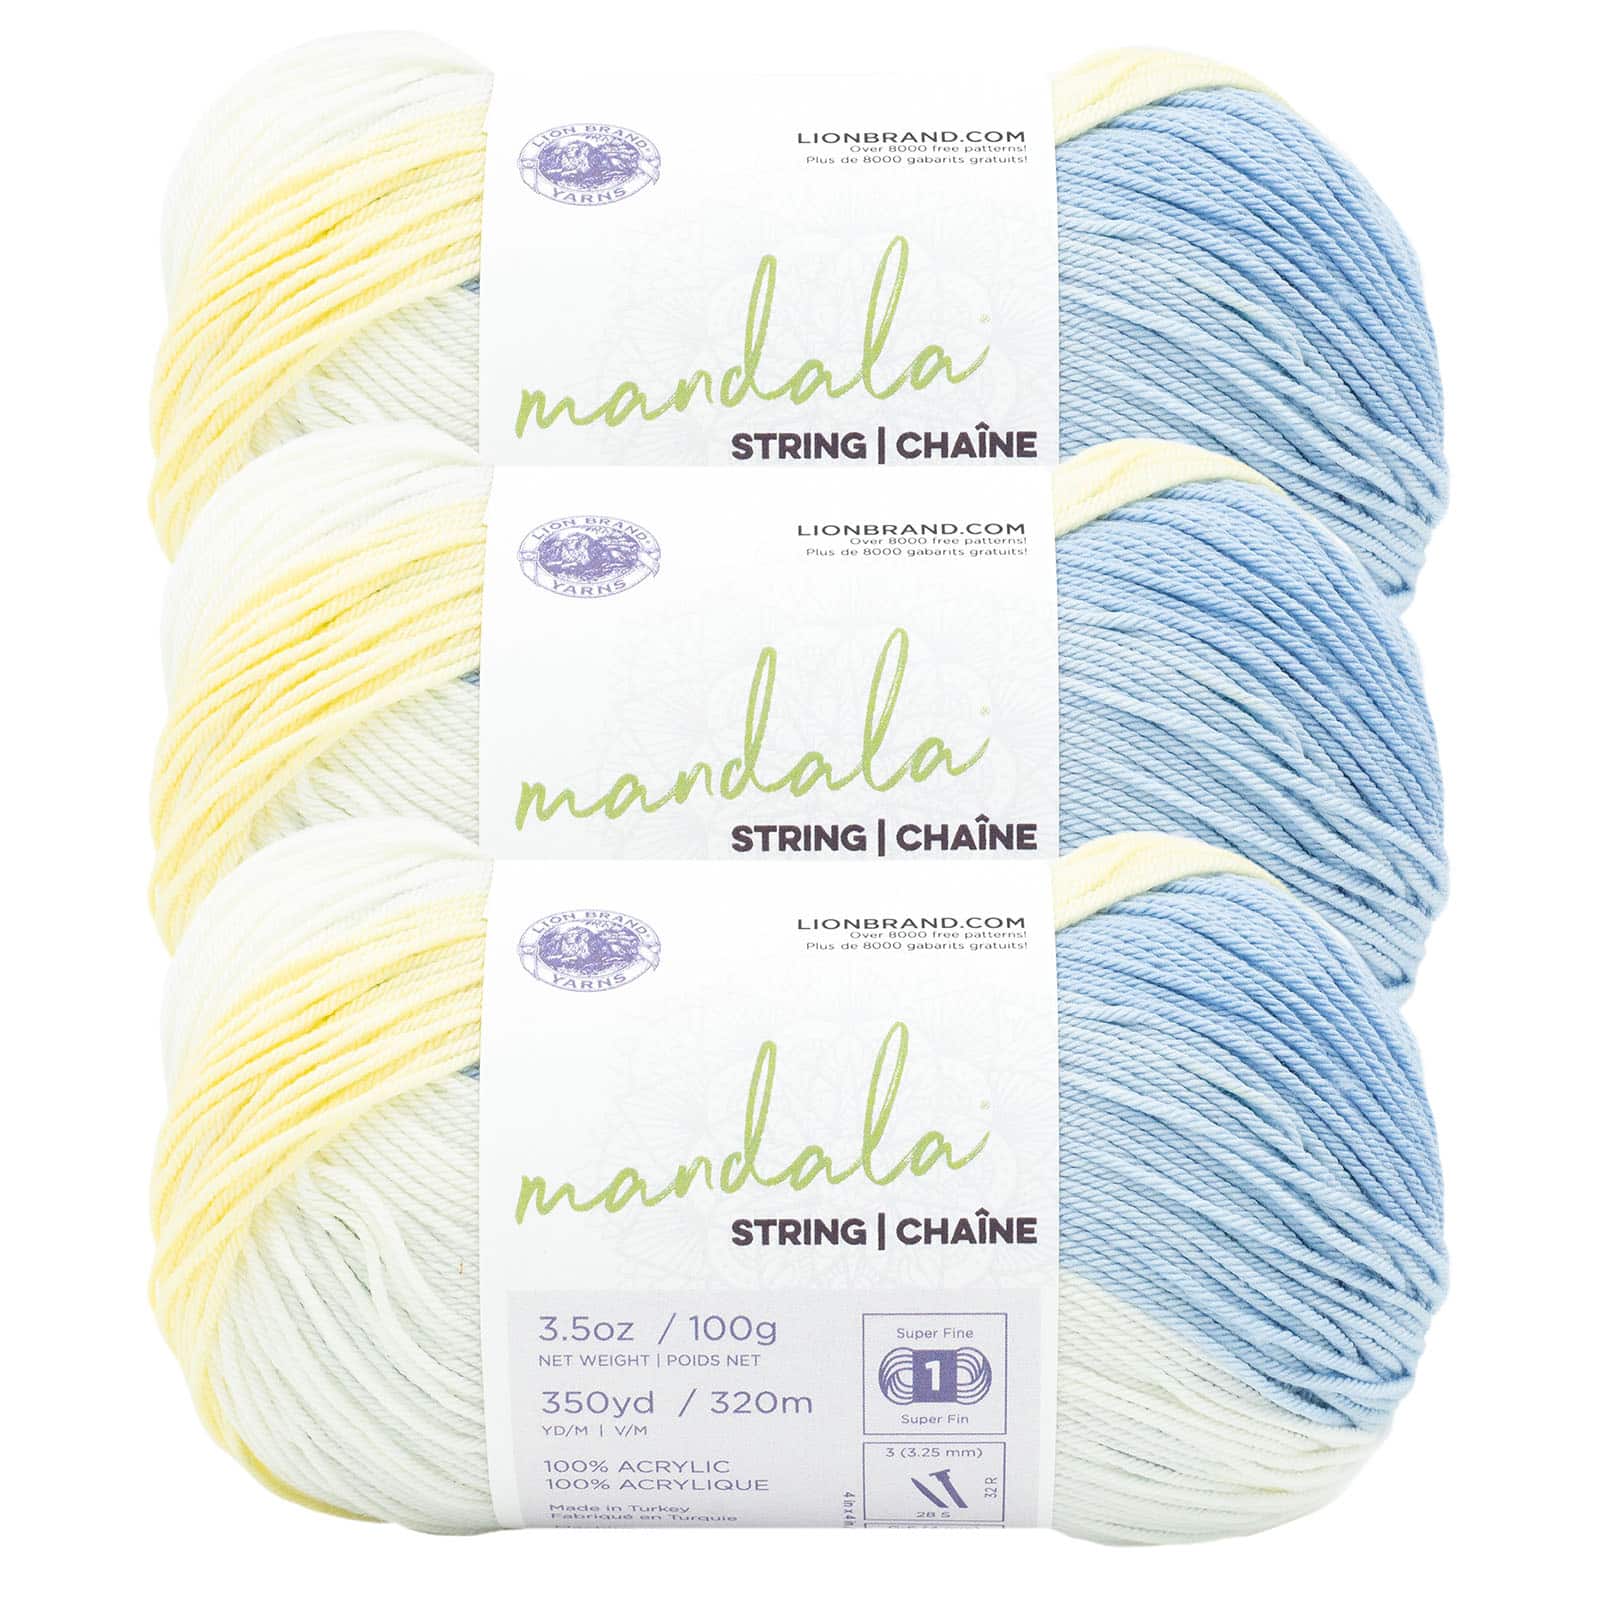 3 ct Lion Brand Stitch Soak Scrub Yarn in Blue Indigo | 1.4 | Michaels